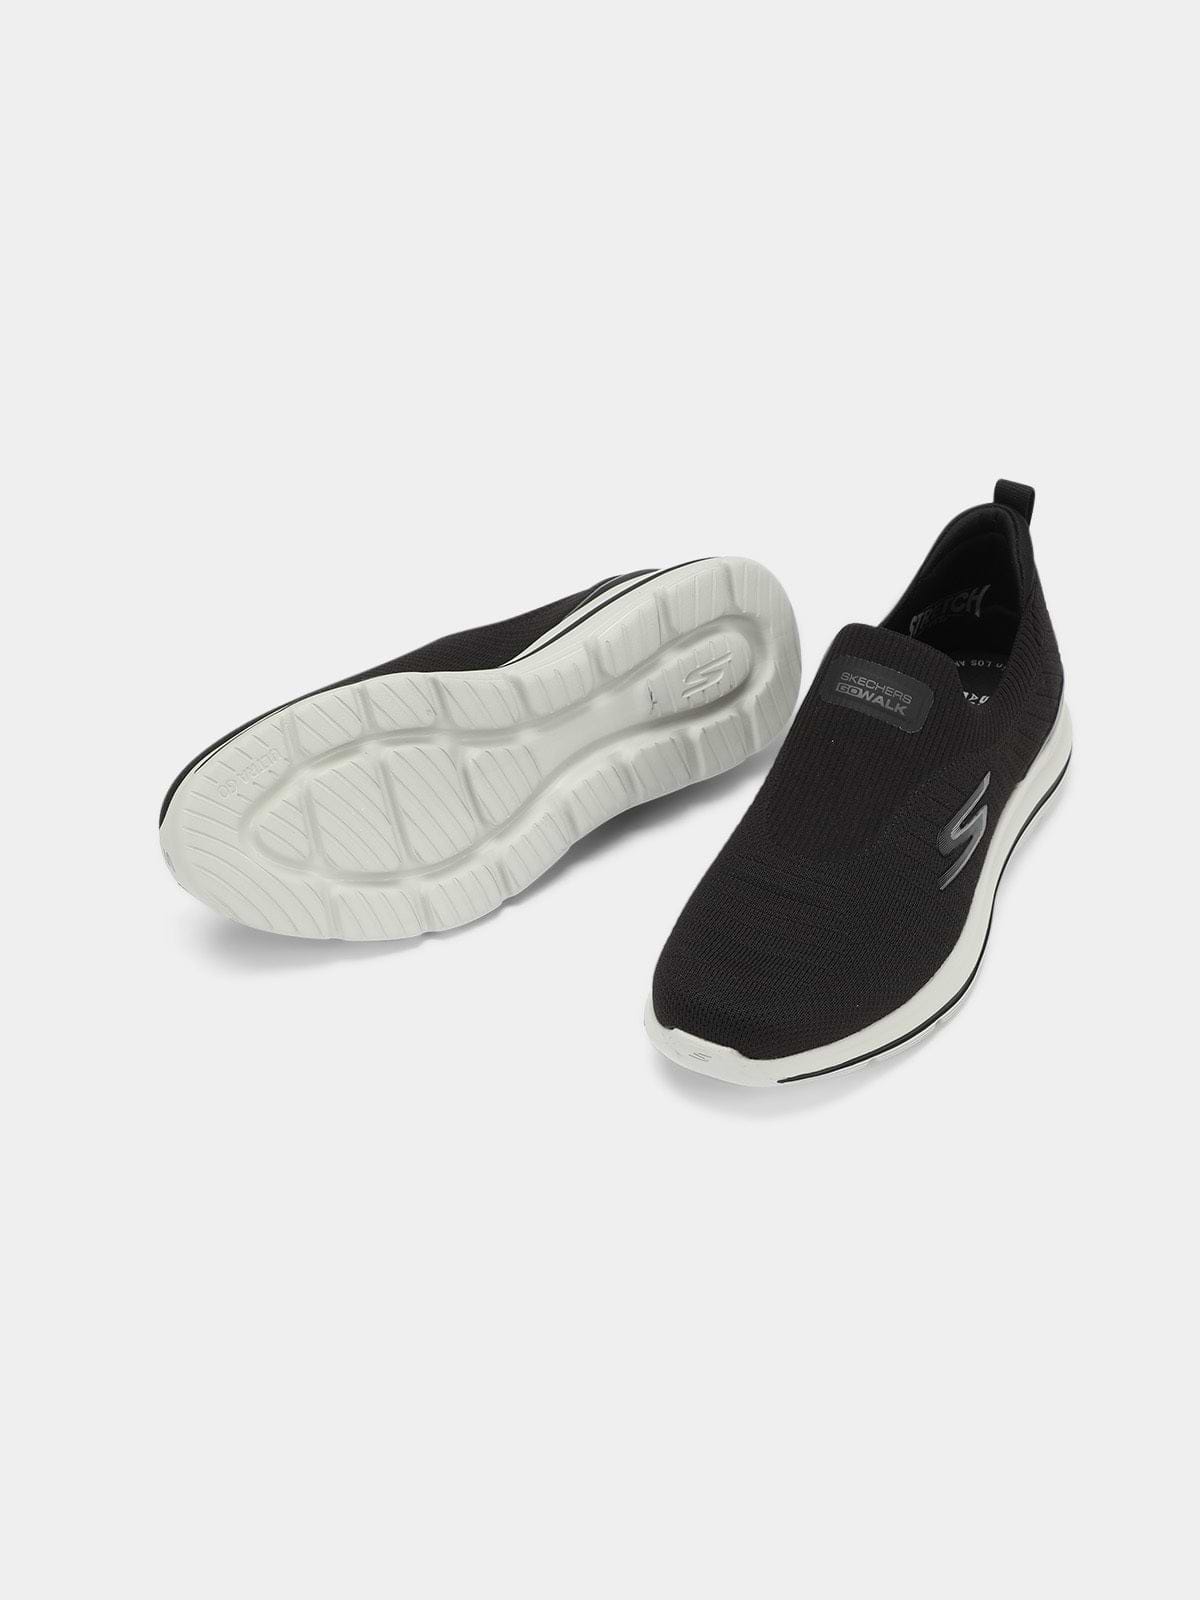 נעלי סניקרס Skechers GOwalk Stretch Fit- New Outsider / גברים- Skechers|סקצ'רס 